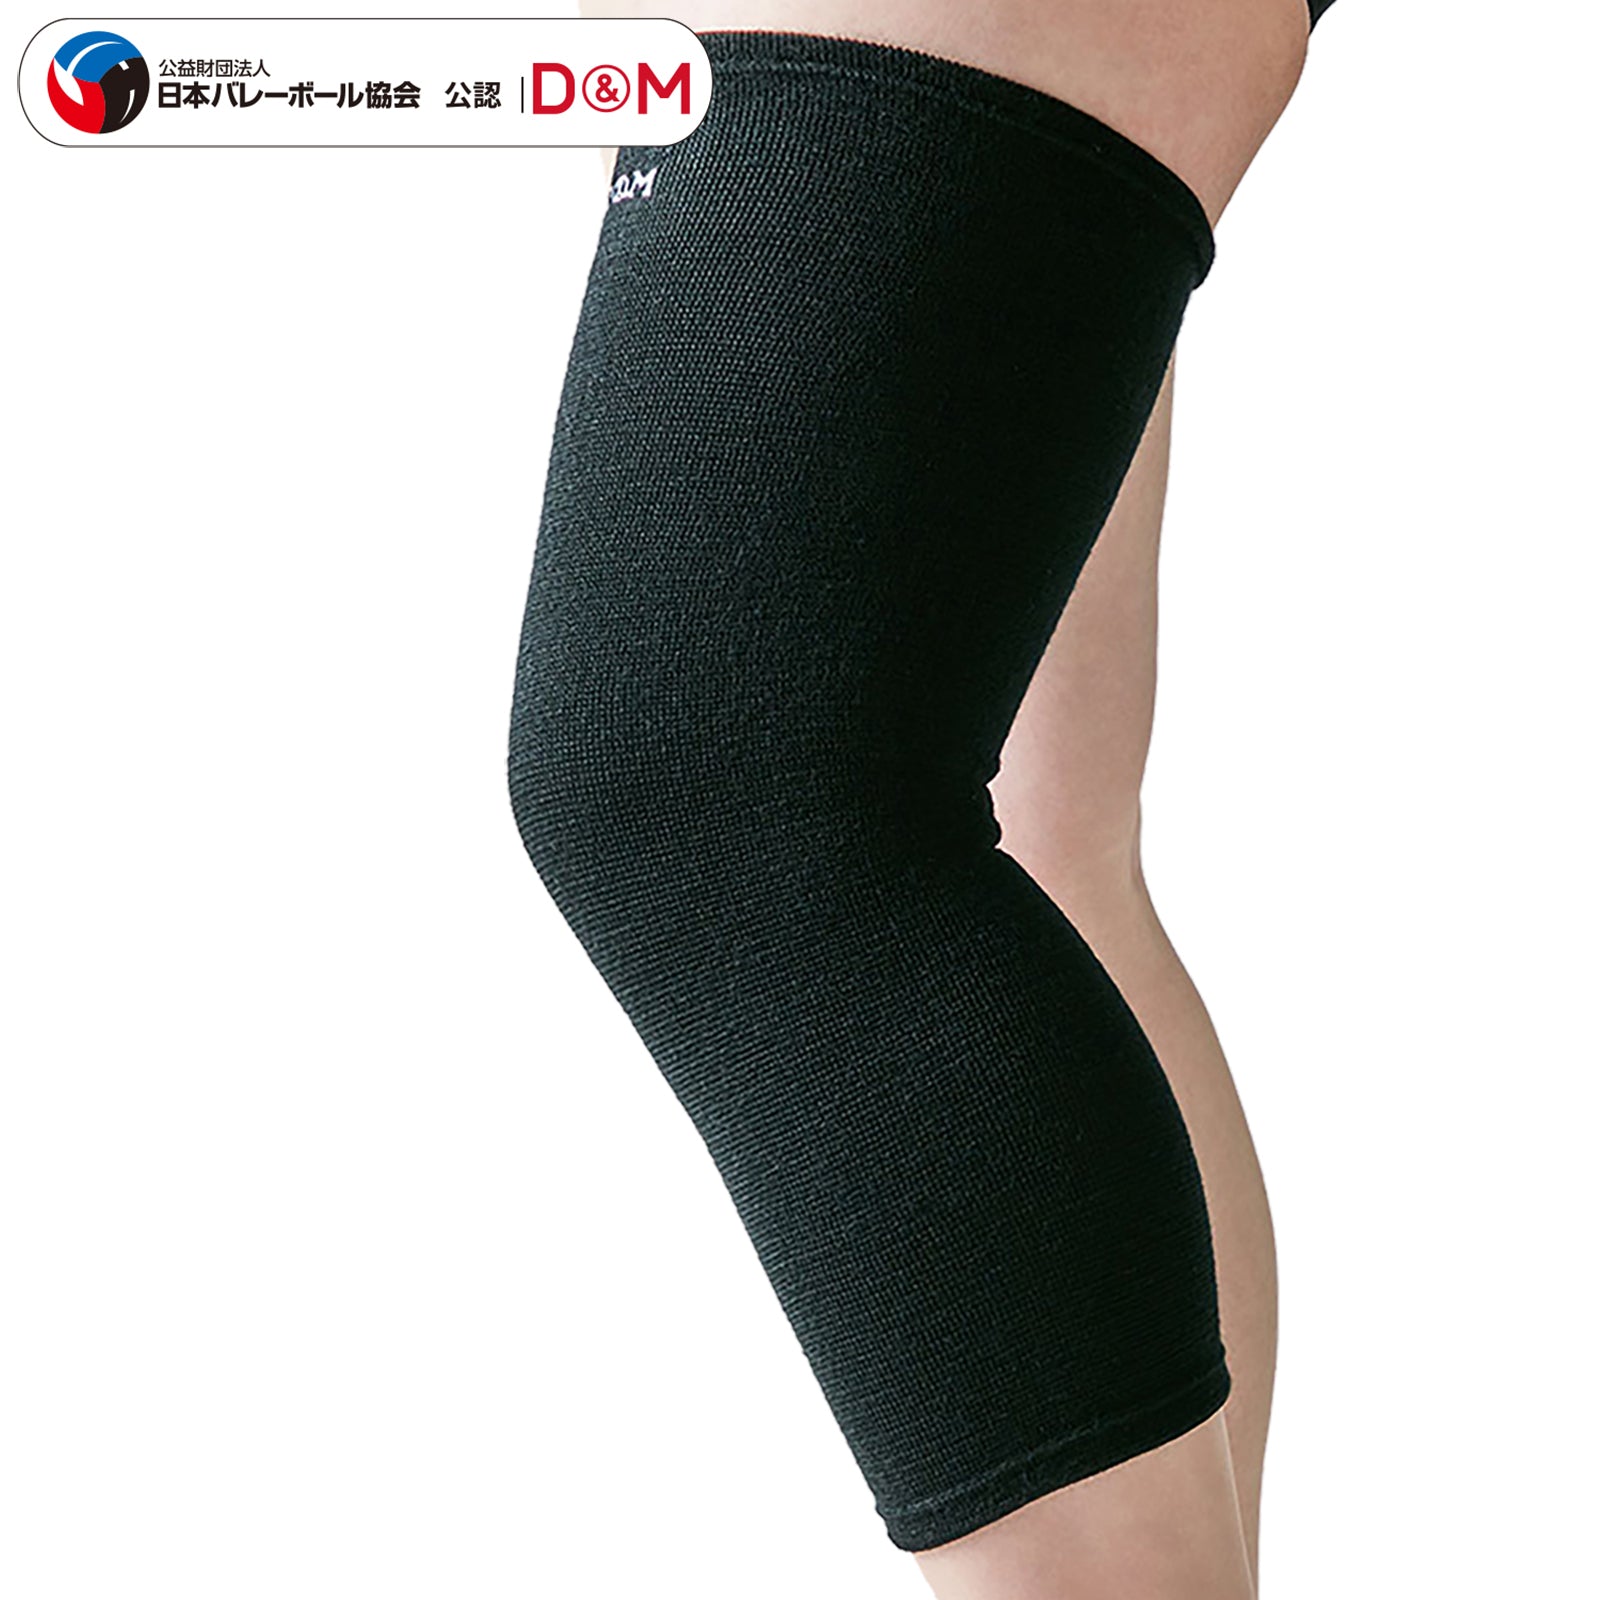 膝サポーター・テーピング関連商品一覧 – D&M公式オンラインショップ